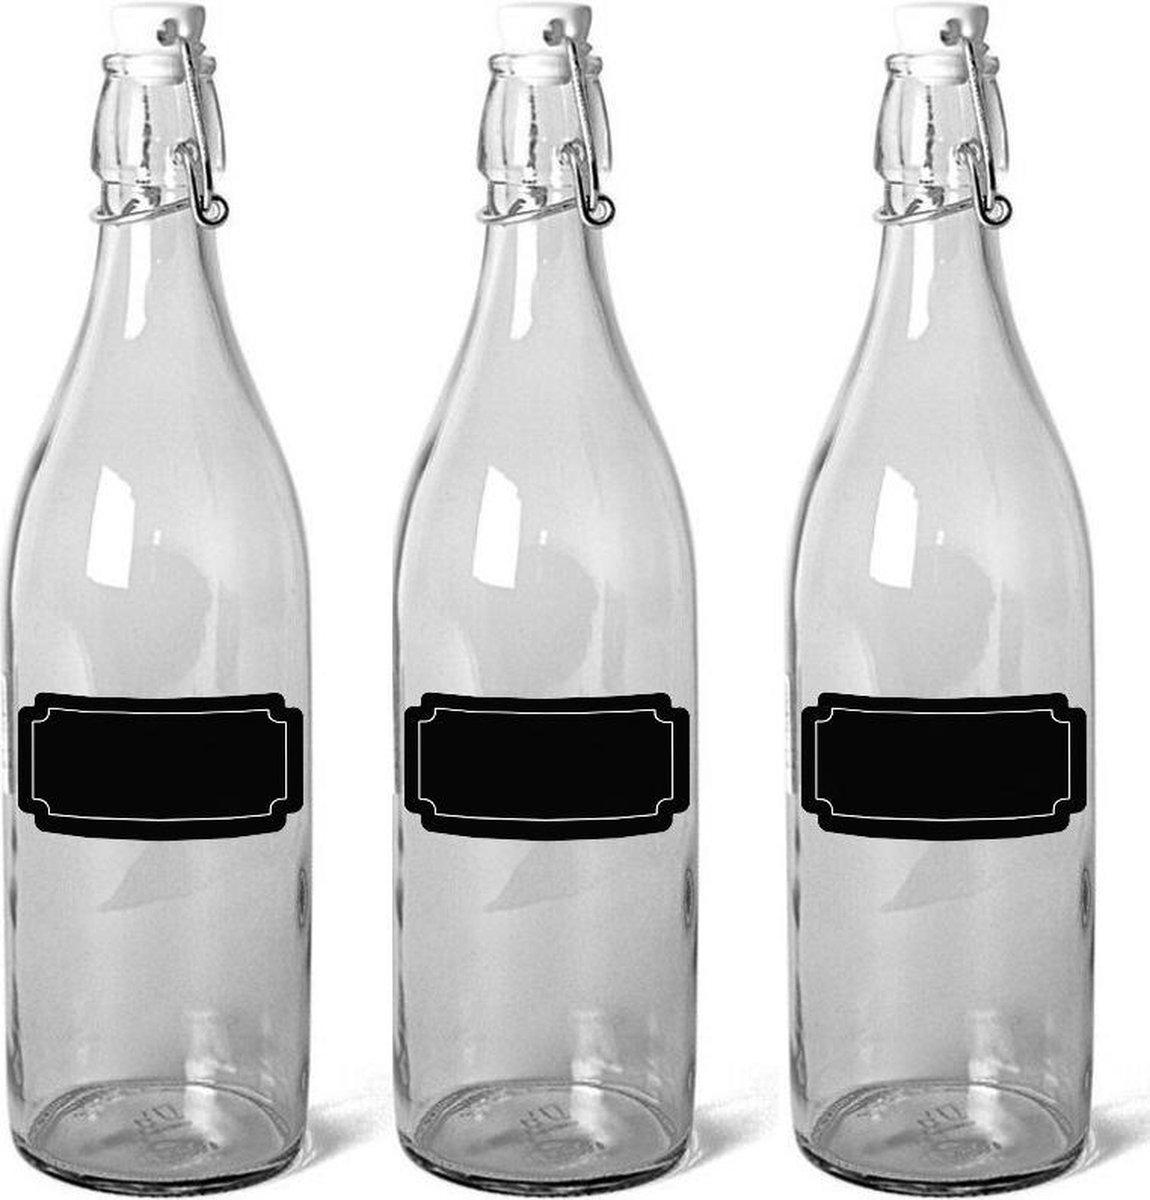 Merkloos Sans marque 18x Glazen beugelflessen weckflessen 1 liter met krijtbord etiketten Inmaakflessen van glas met labels stickers